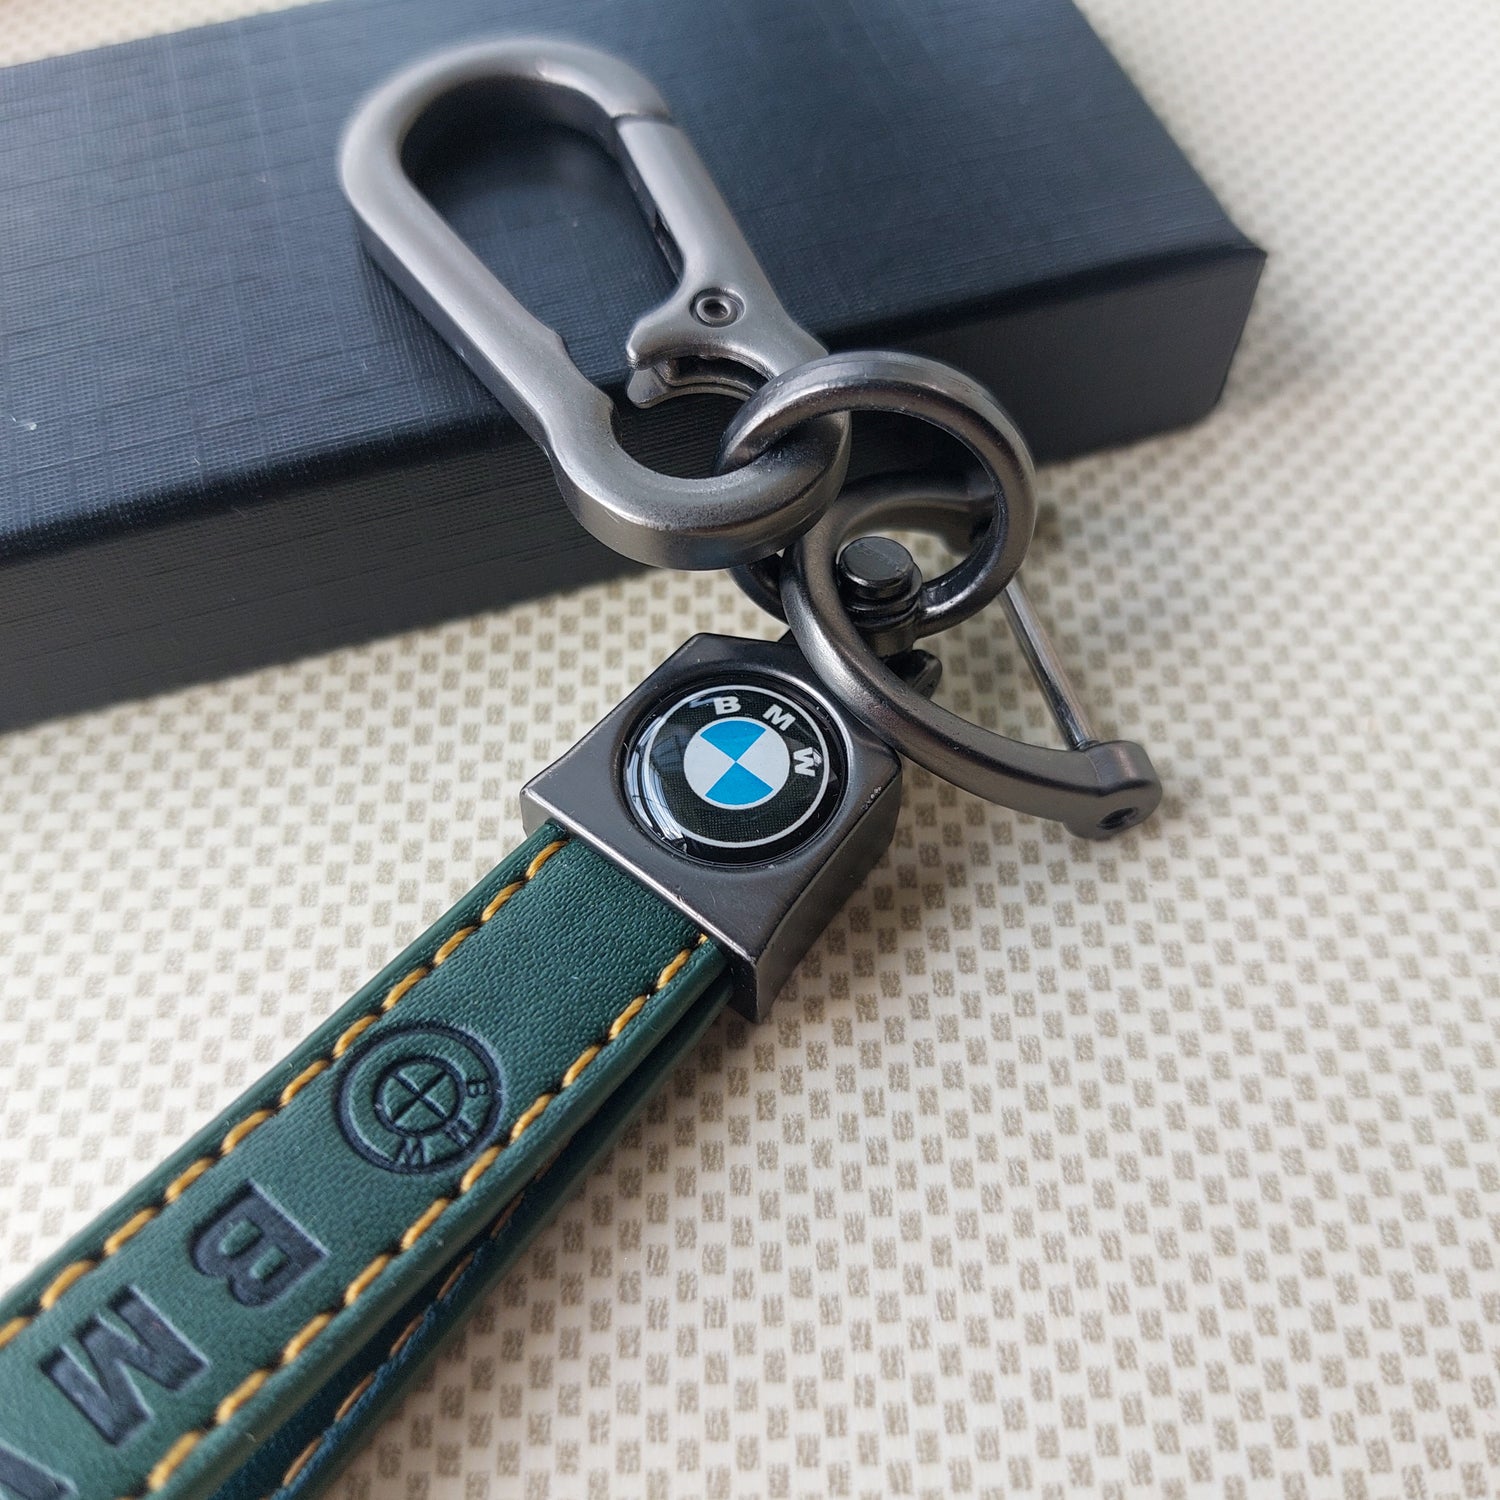 BMW Car Logo Leather Keychains